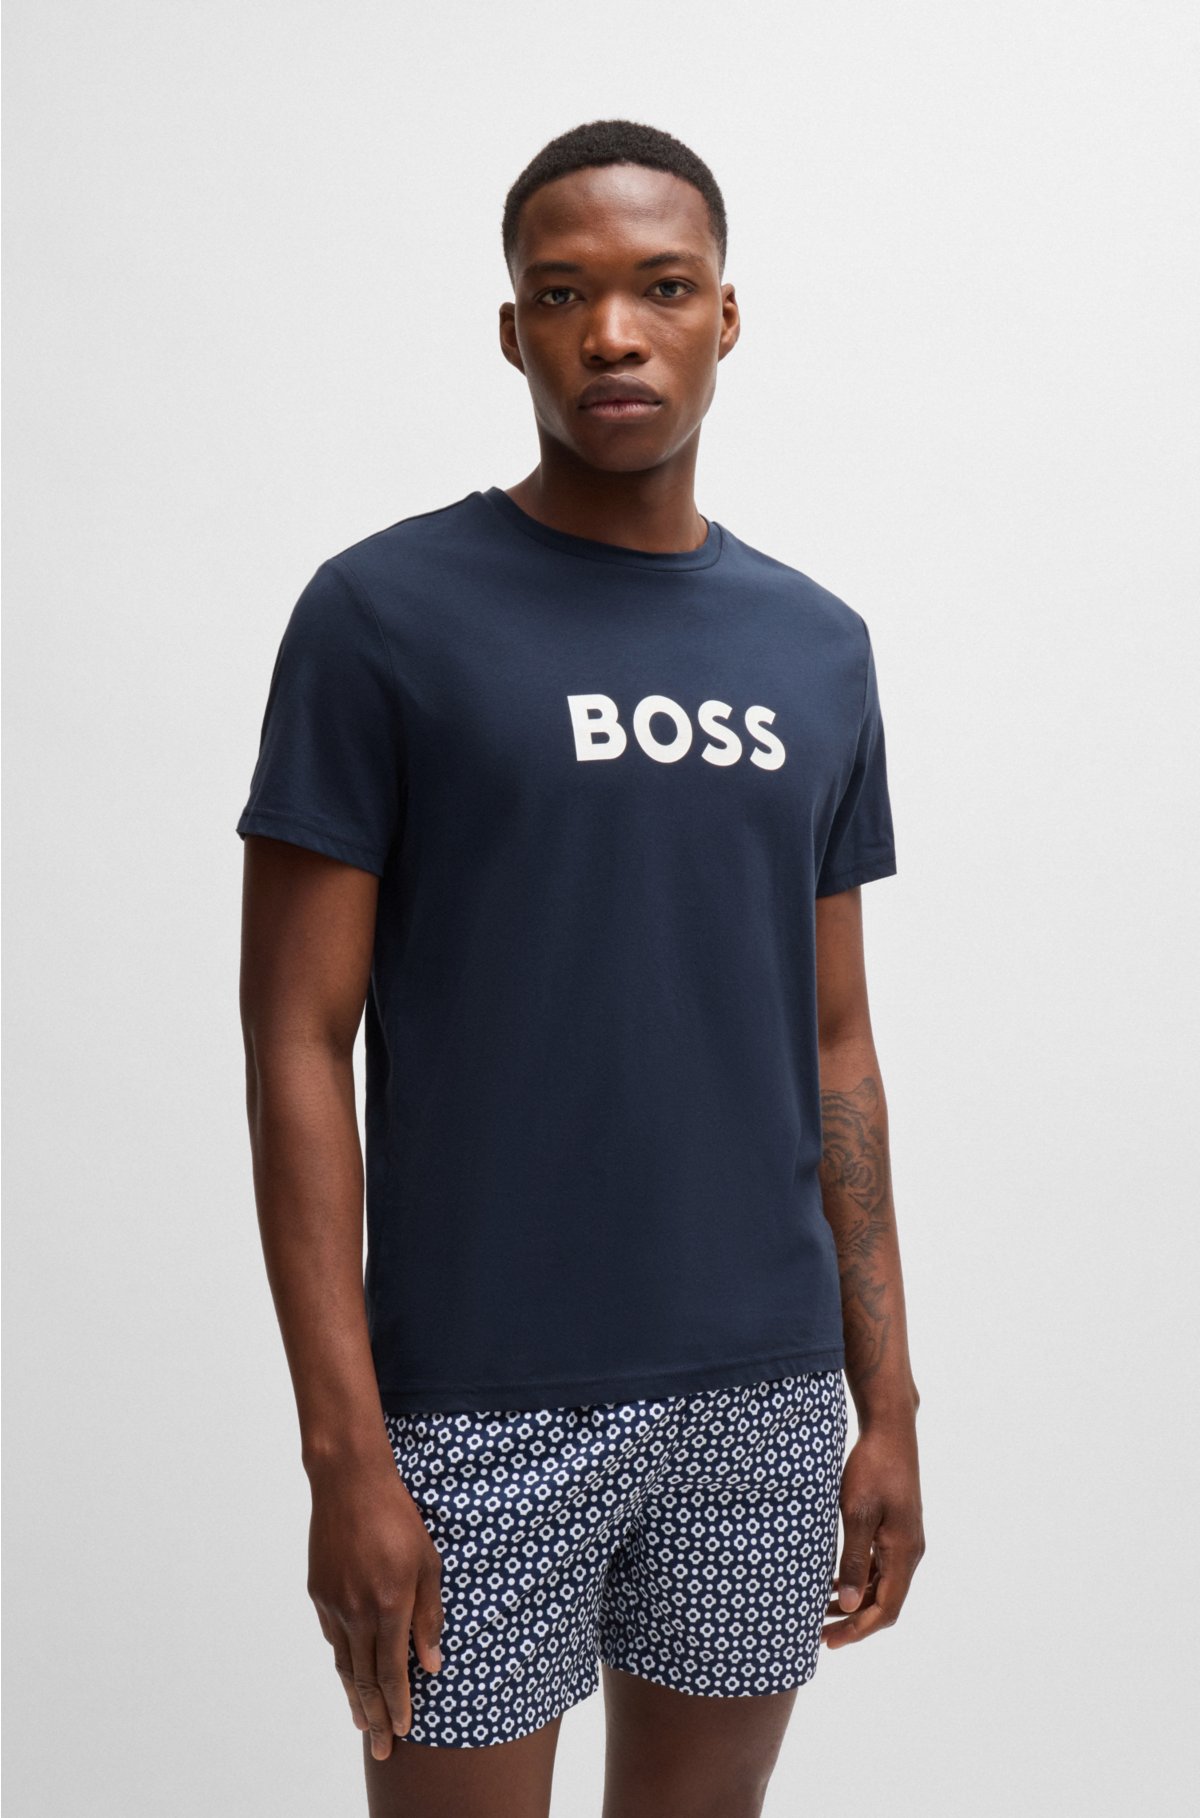 BOSS T-shirt with - logo regular-fit Cotton-jersey print